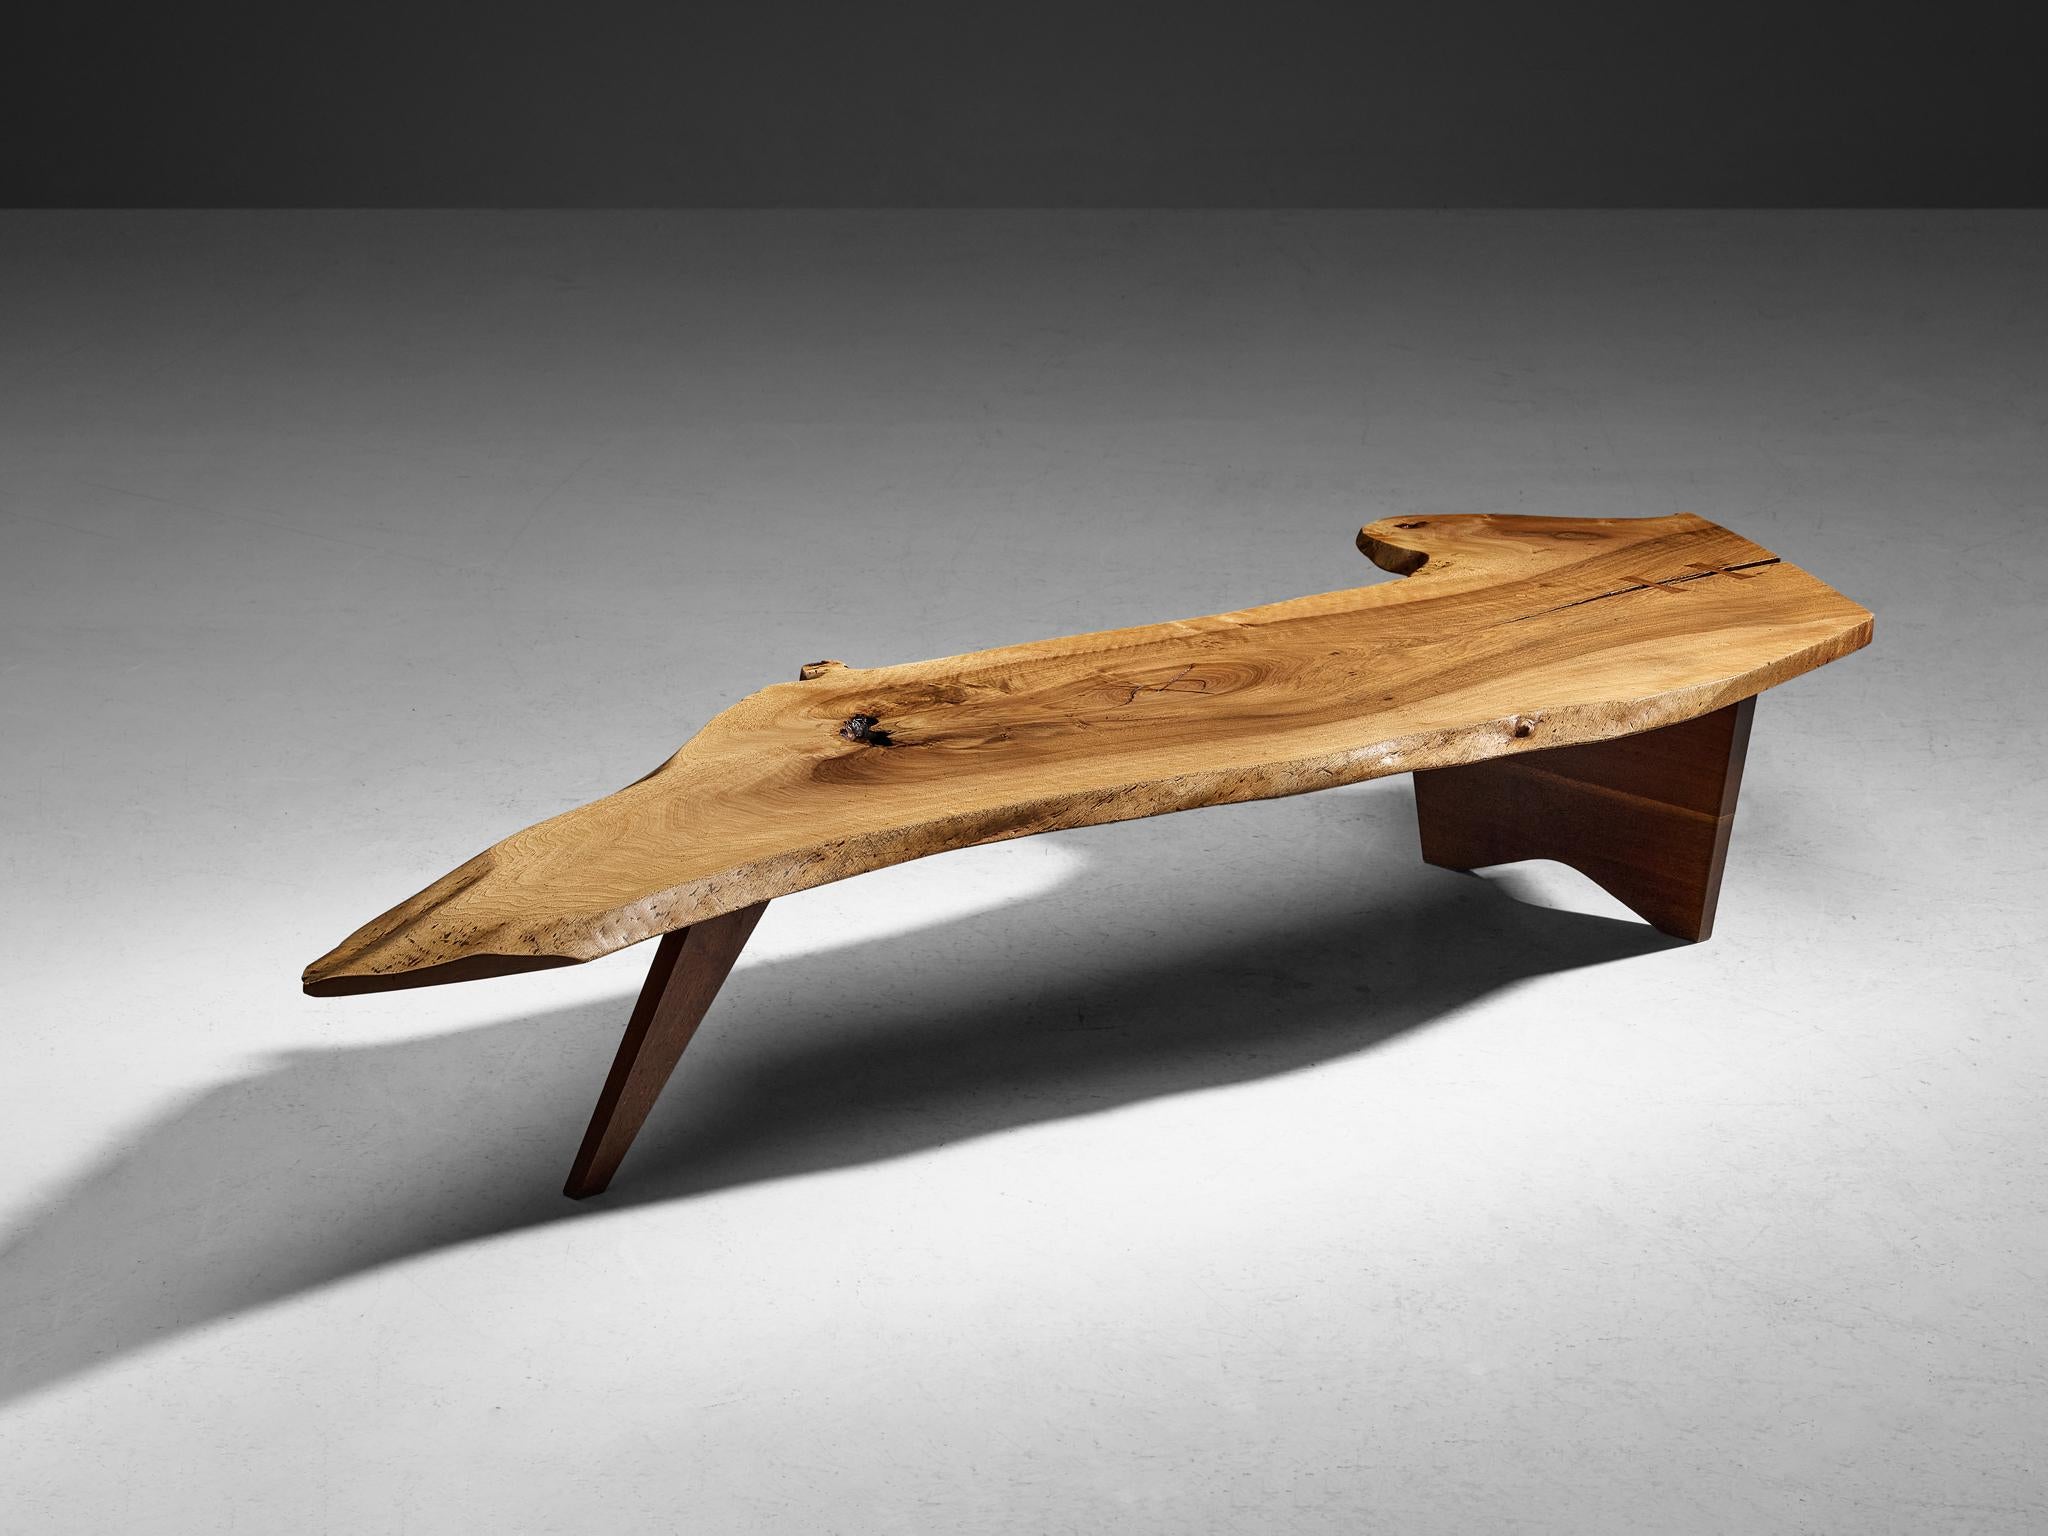 George Nakashima, Couchtisch mit freier Kante, Nussbaum, Vereinigte Staaten, 1958

Der amerikanische Holzarbeiter und Designer George Nakashima beweist mit diesem Tisch, dass er ein wahrer Meister seines Fachs ist. Der beeindruckende Couchtisch, der